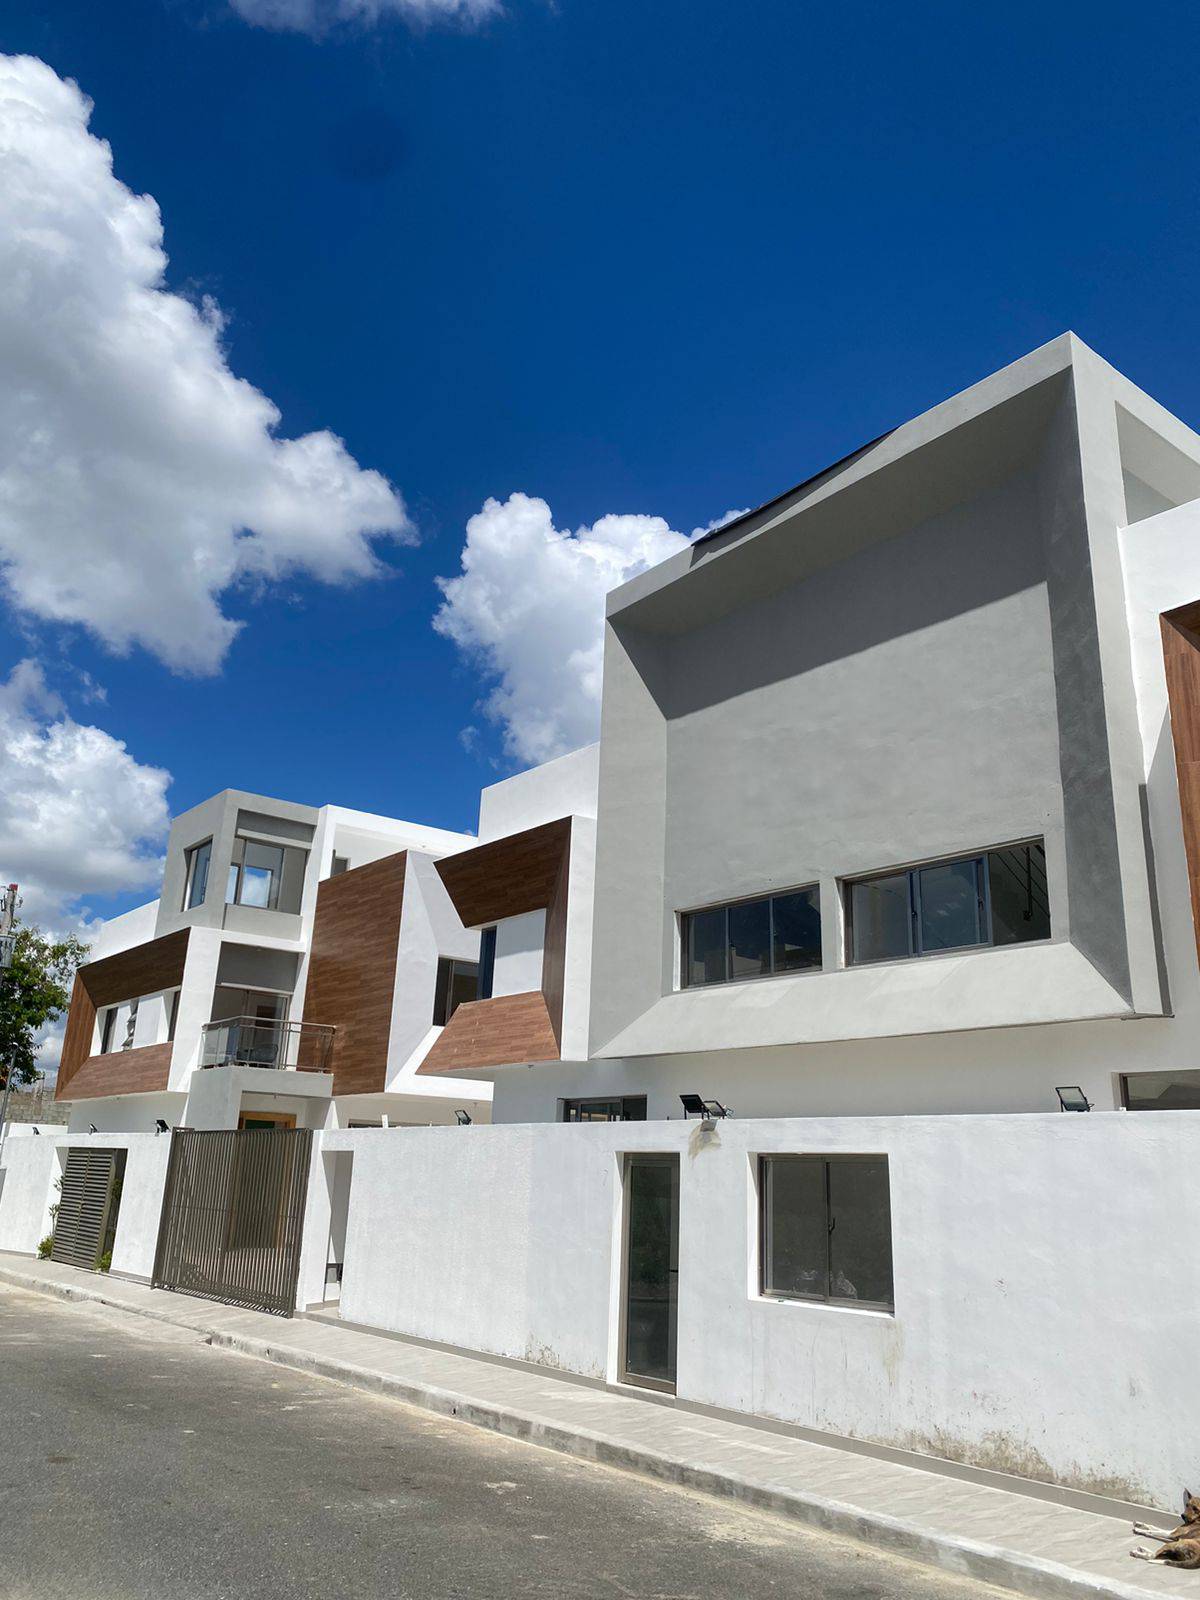 Vendo casas totalmente nueva en Prador Oriental Autopista de San Isidr Foto 7217559-2.jpg